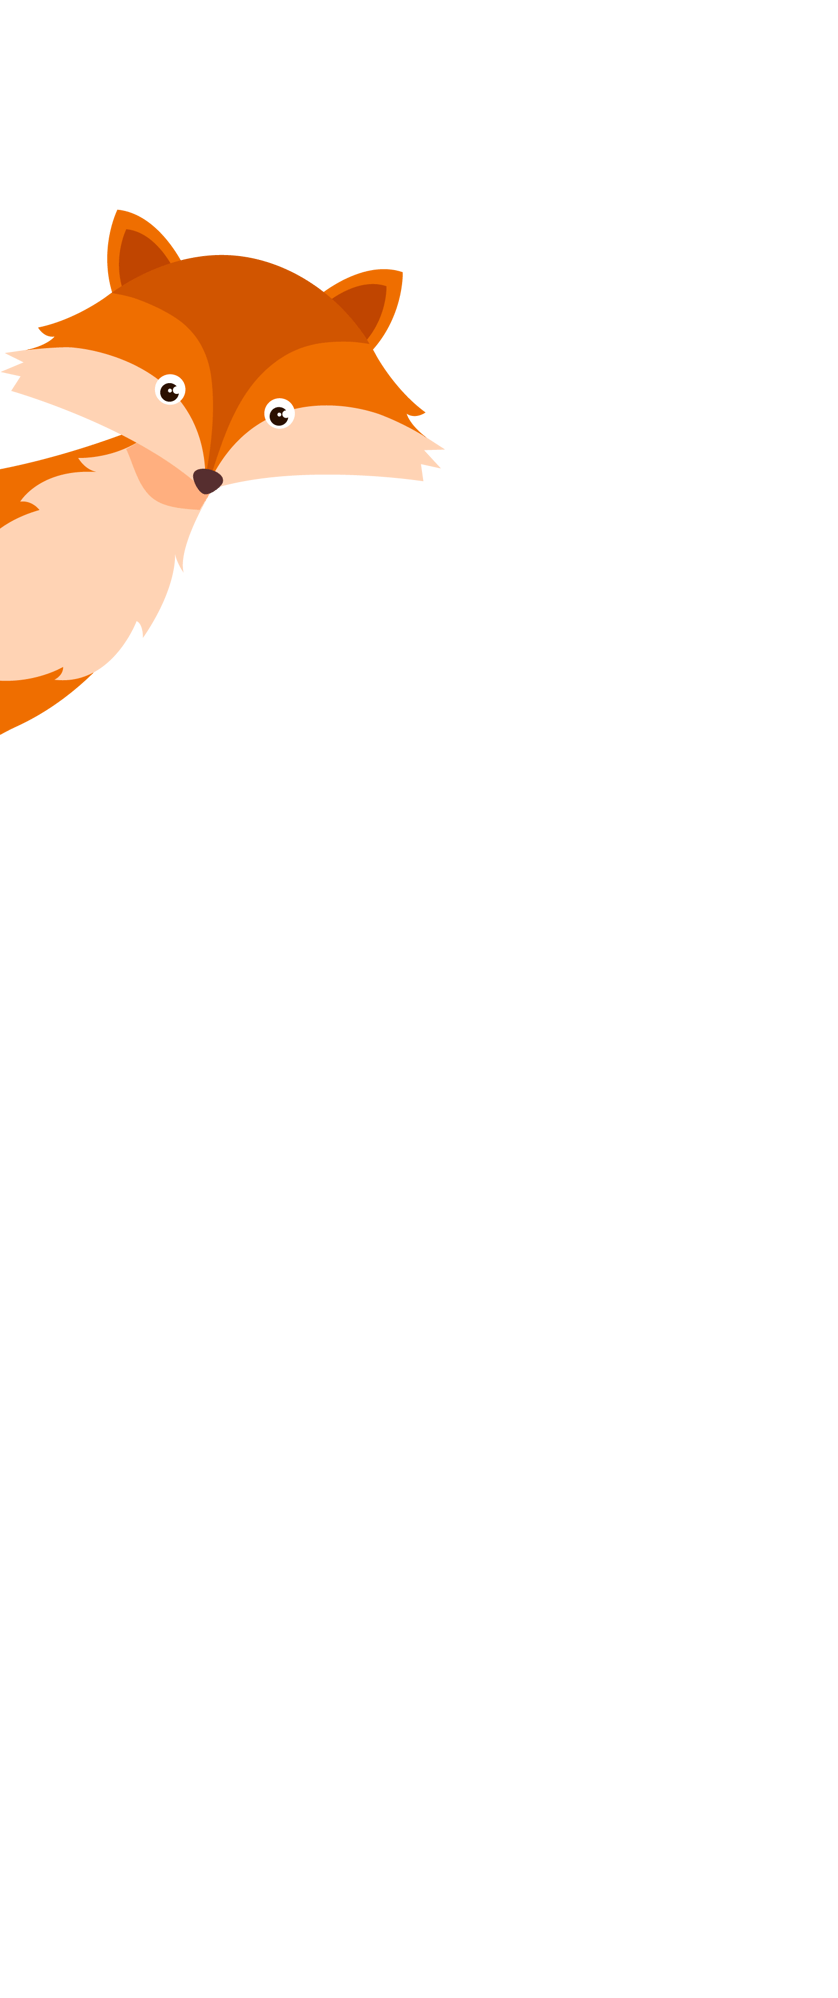 Ein gemaltes oranges Fuchsbild, bei dem ein Fuchs hervorschaut